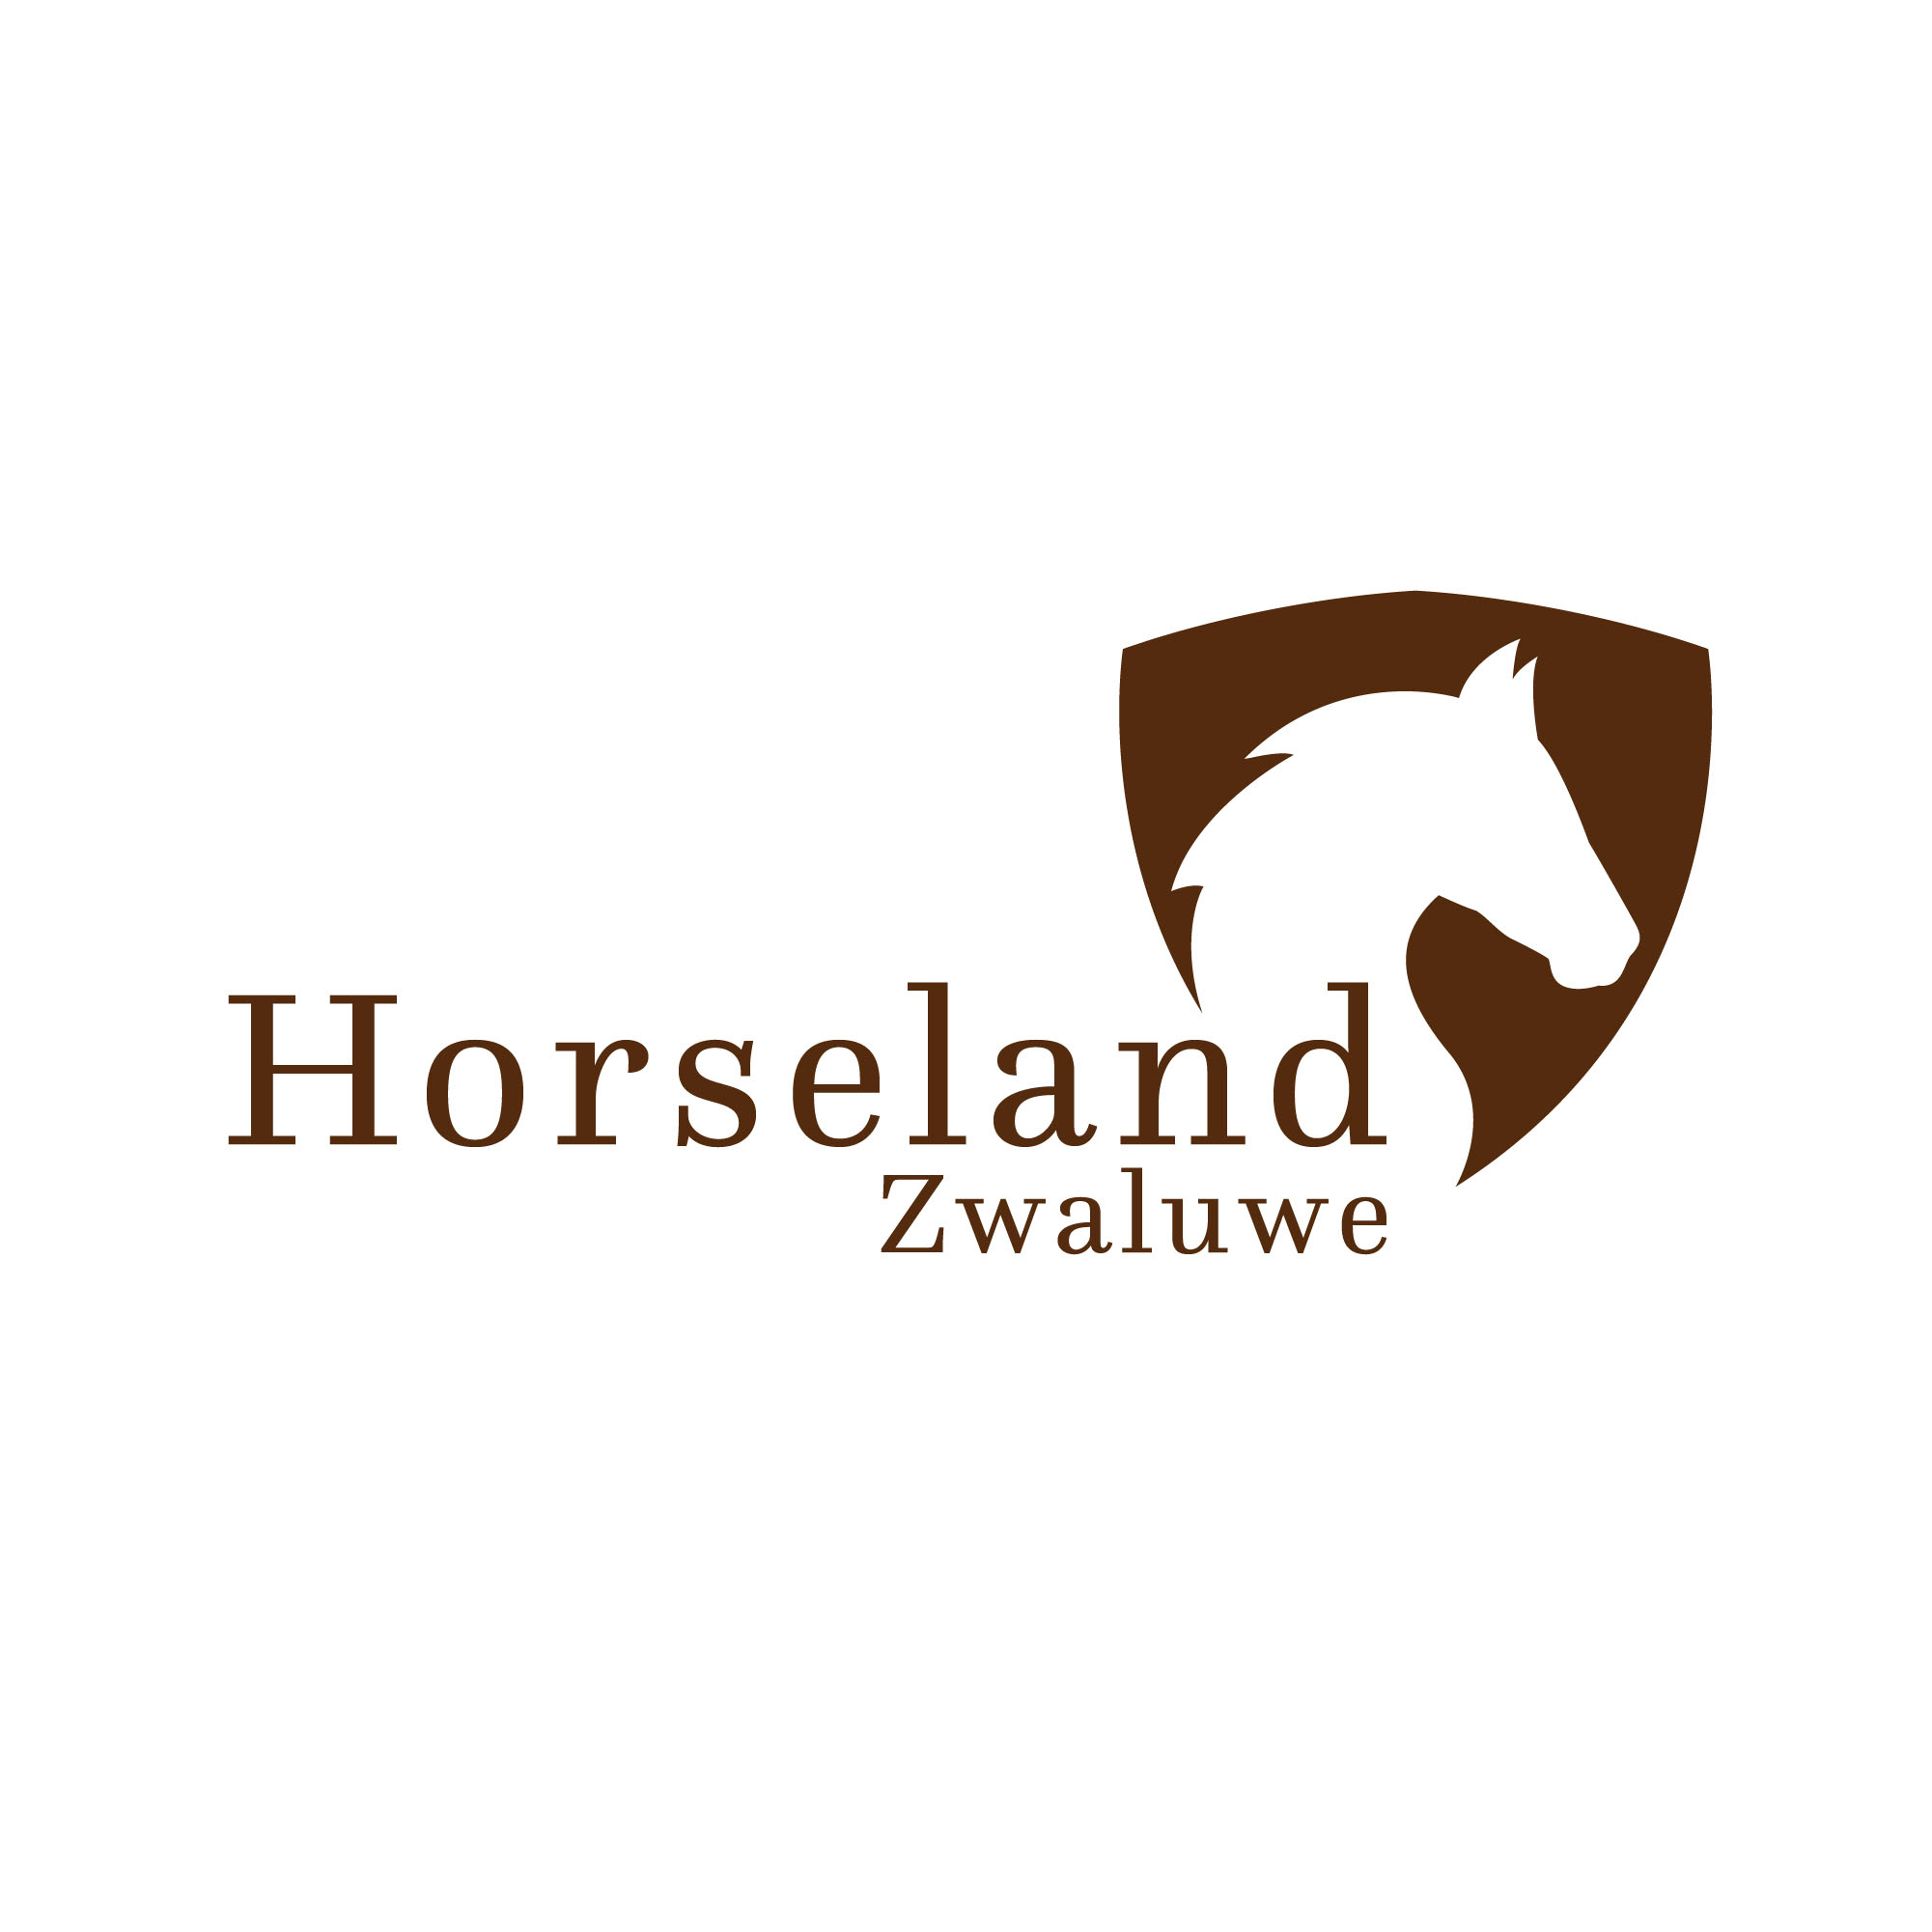 Horseland Zwaluwe logo